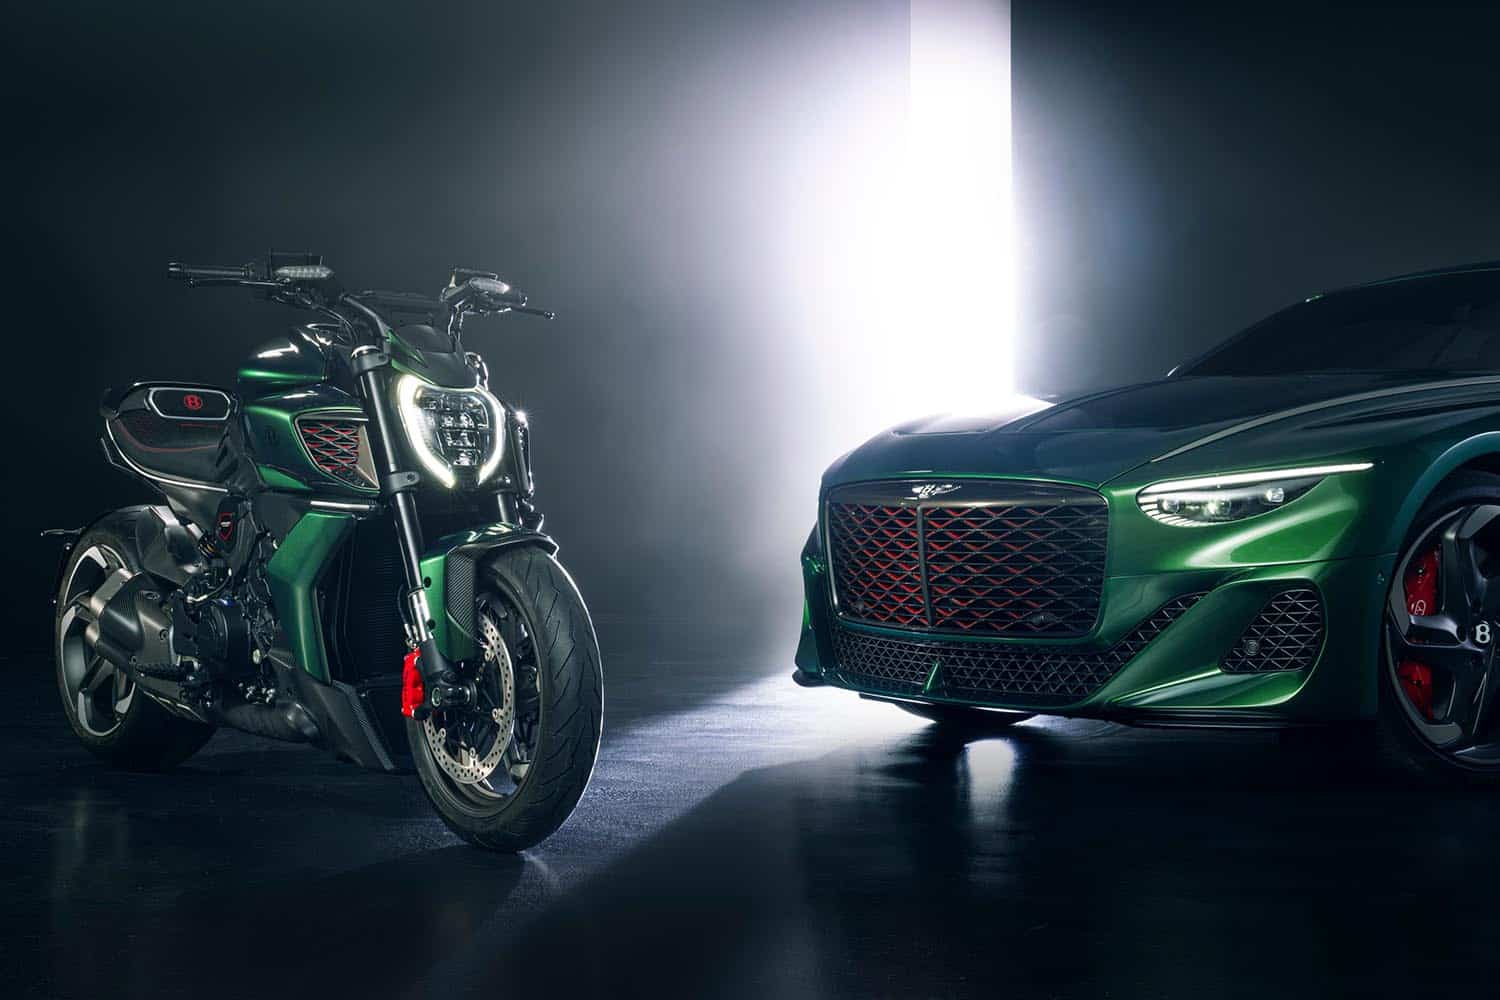 La la espectacular moto italiana llega con otra colaboración única entre el mundo de las dos ruedas y el de las cuatro con un toque de exclusividad y lujo. El resultado de esta unión es la nueva Ducati Diavel for Bentley se inspira en el Batur